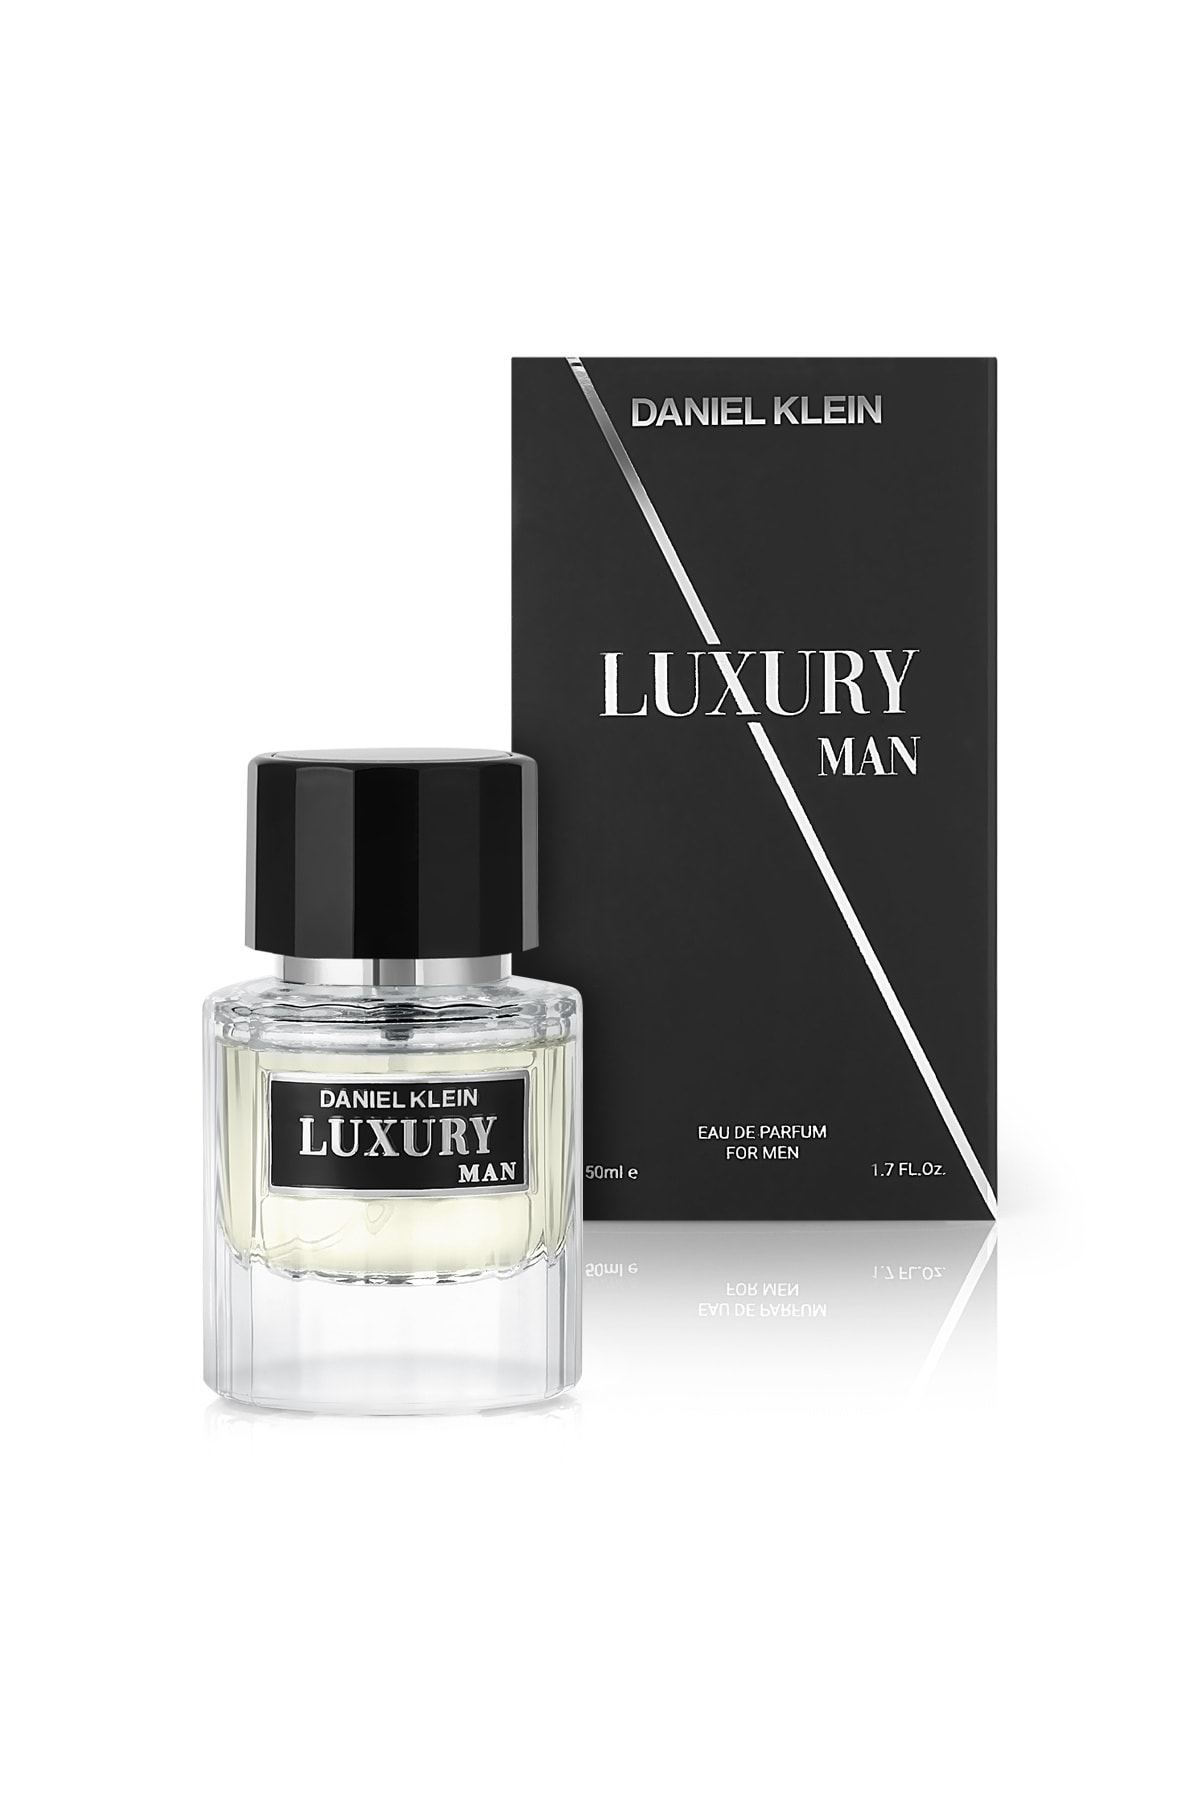 Daniel Klein Erkek Parfümü Edp 50ml / Luxury Man 2445628016152